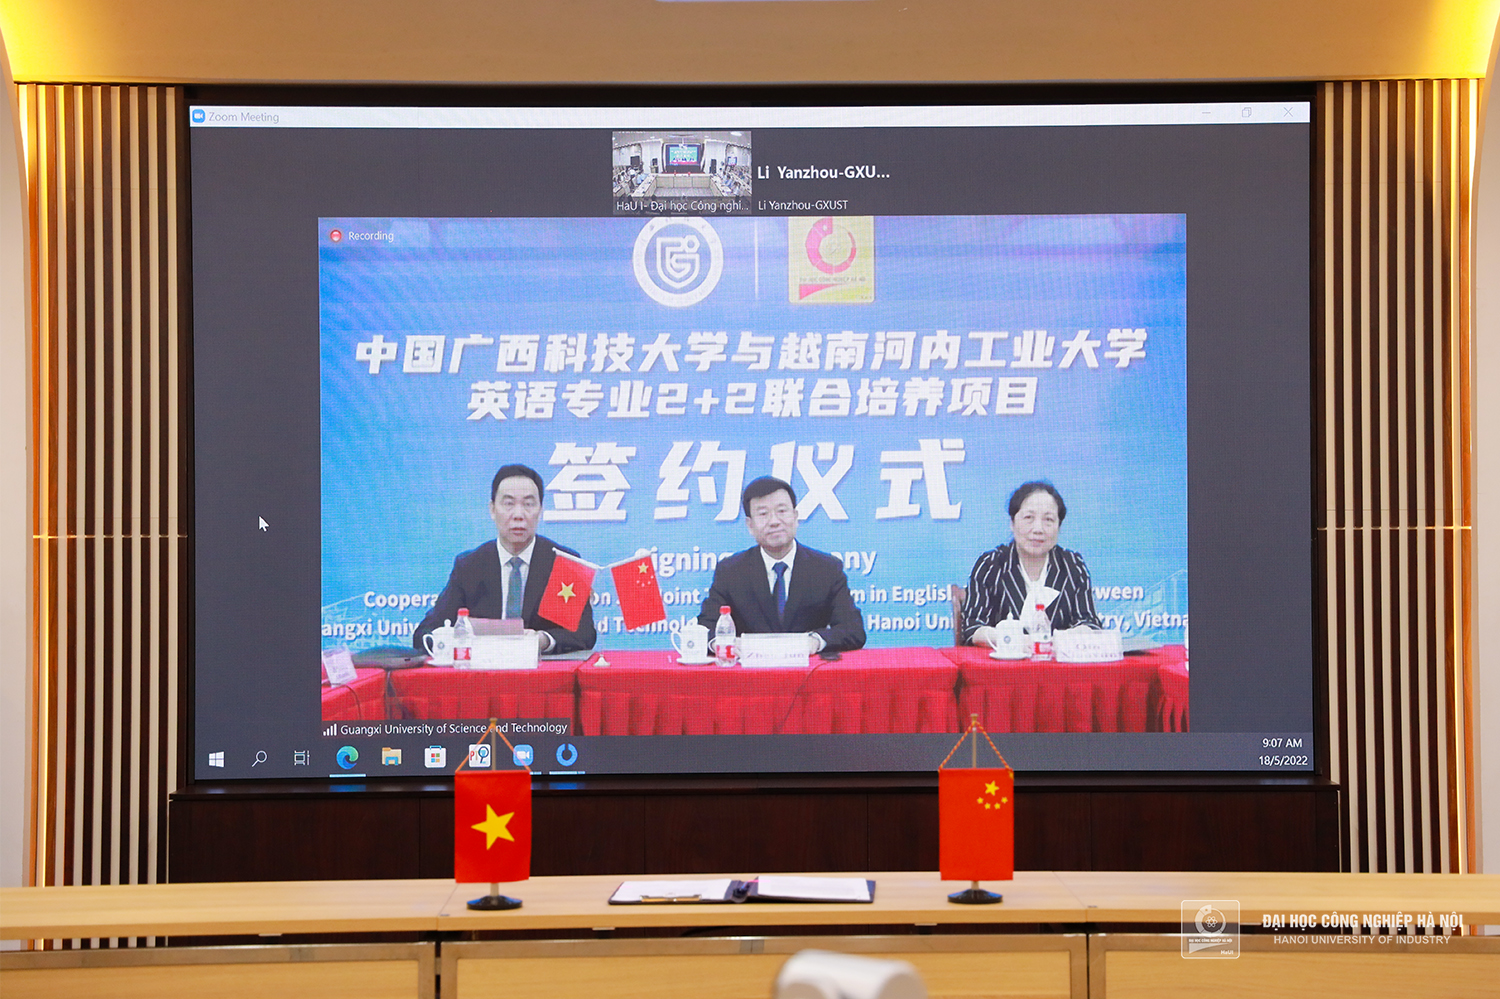 Trường Đại học Công nghiệp Hà Nội ký kết thỏa thuận hợp tác đào tạo với Trường Đại học Khoa học Kỹ thuật Quảng Tây